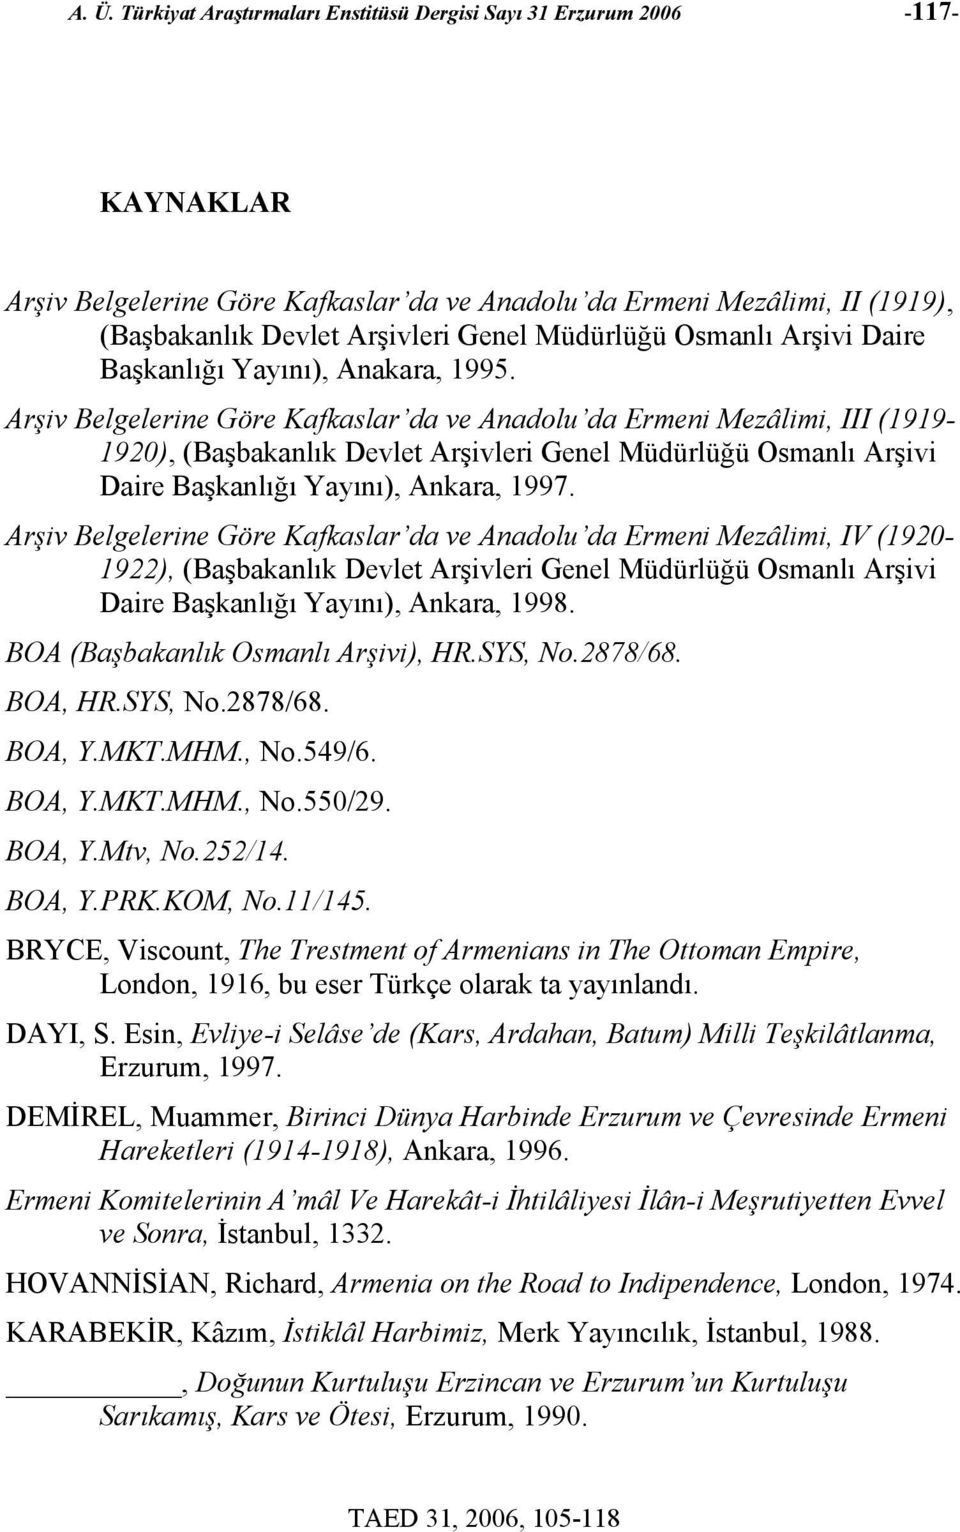 Arşiv Belgelerine Göre Kafkaslar da ve Anadolu da Ermeni Mezâlimi, III (1919-1920), (Başbakanlık Devlet Arşivleri Genel Müdürlüğü Osmanlı Arşivi Daire Başkanlığı Yayını), Ankara, 1997.